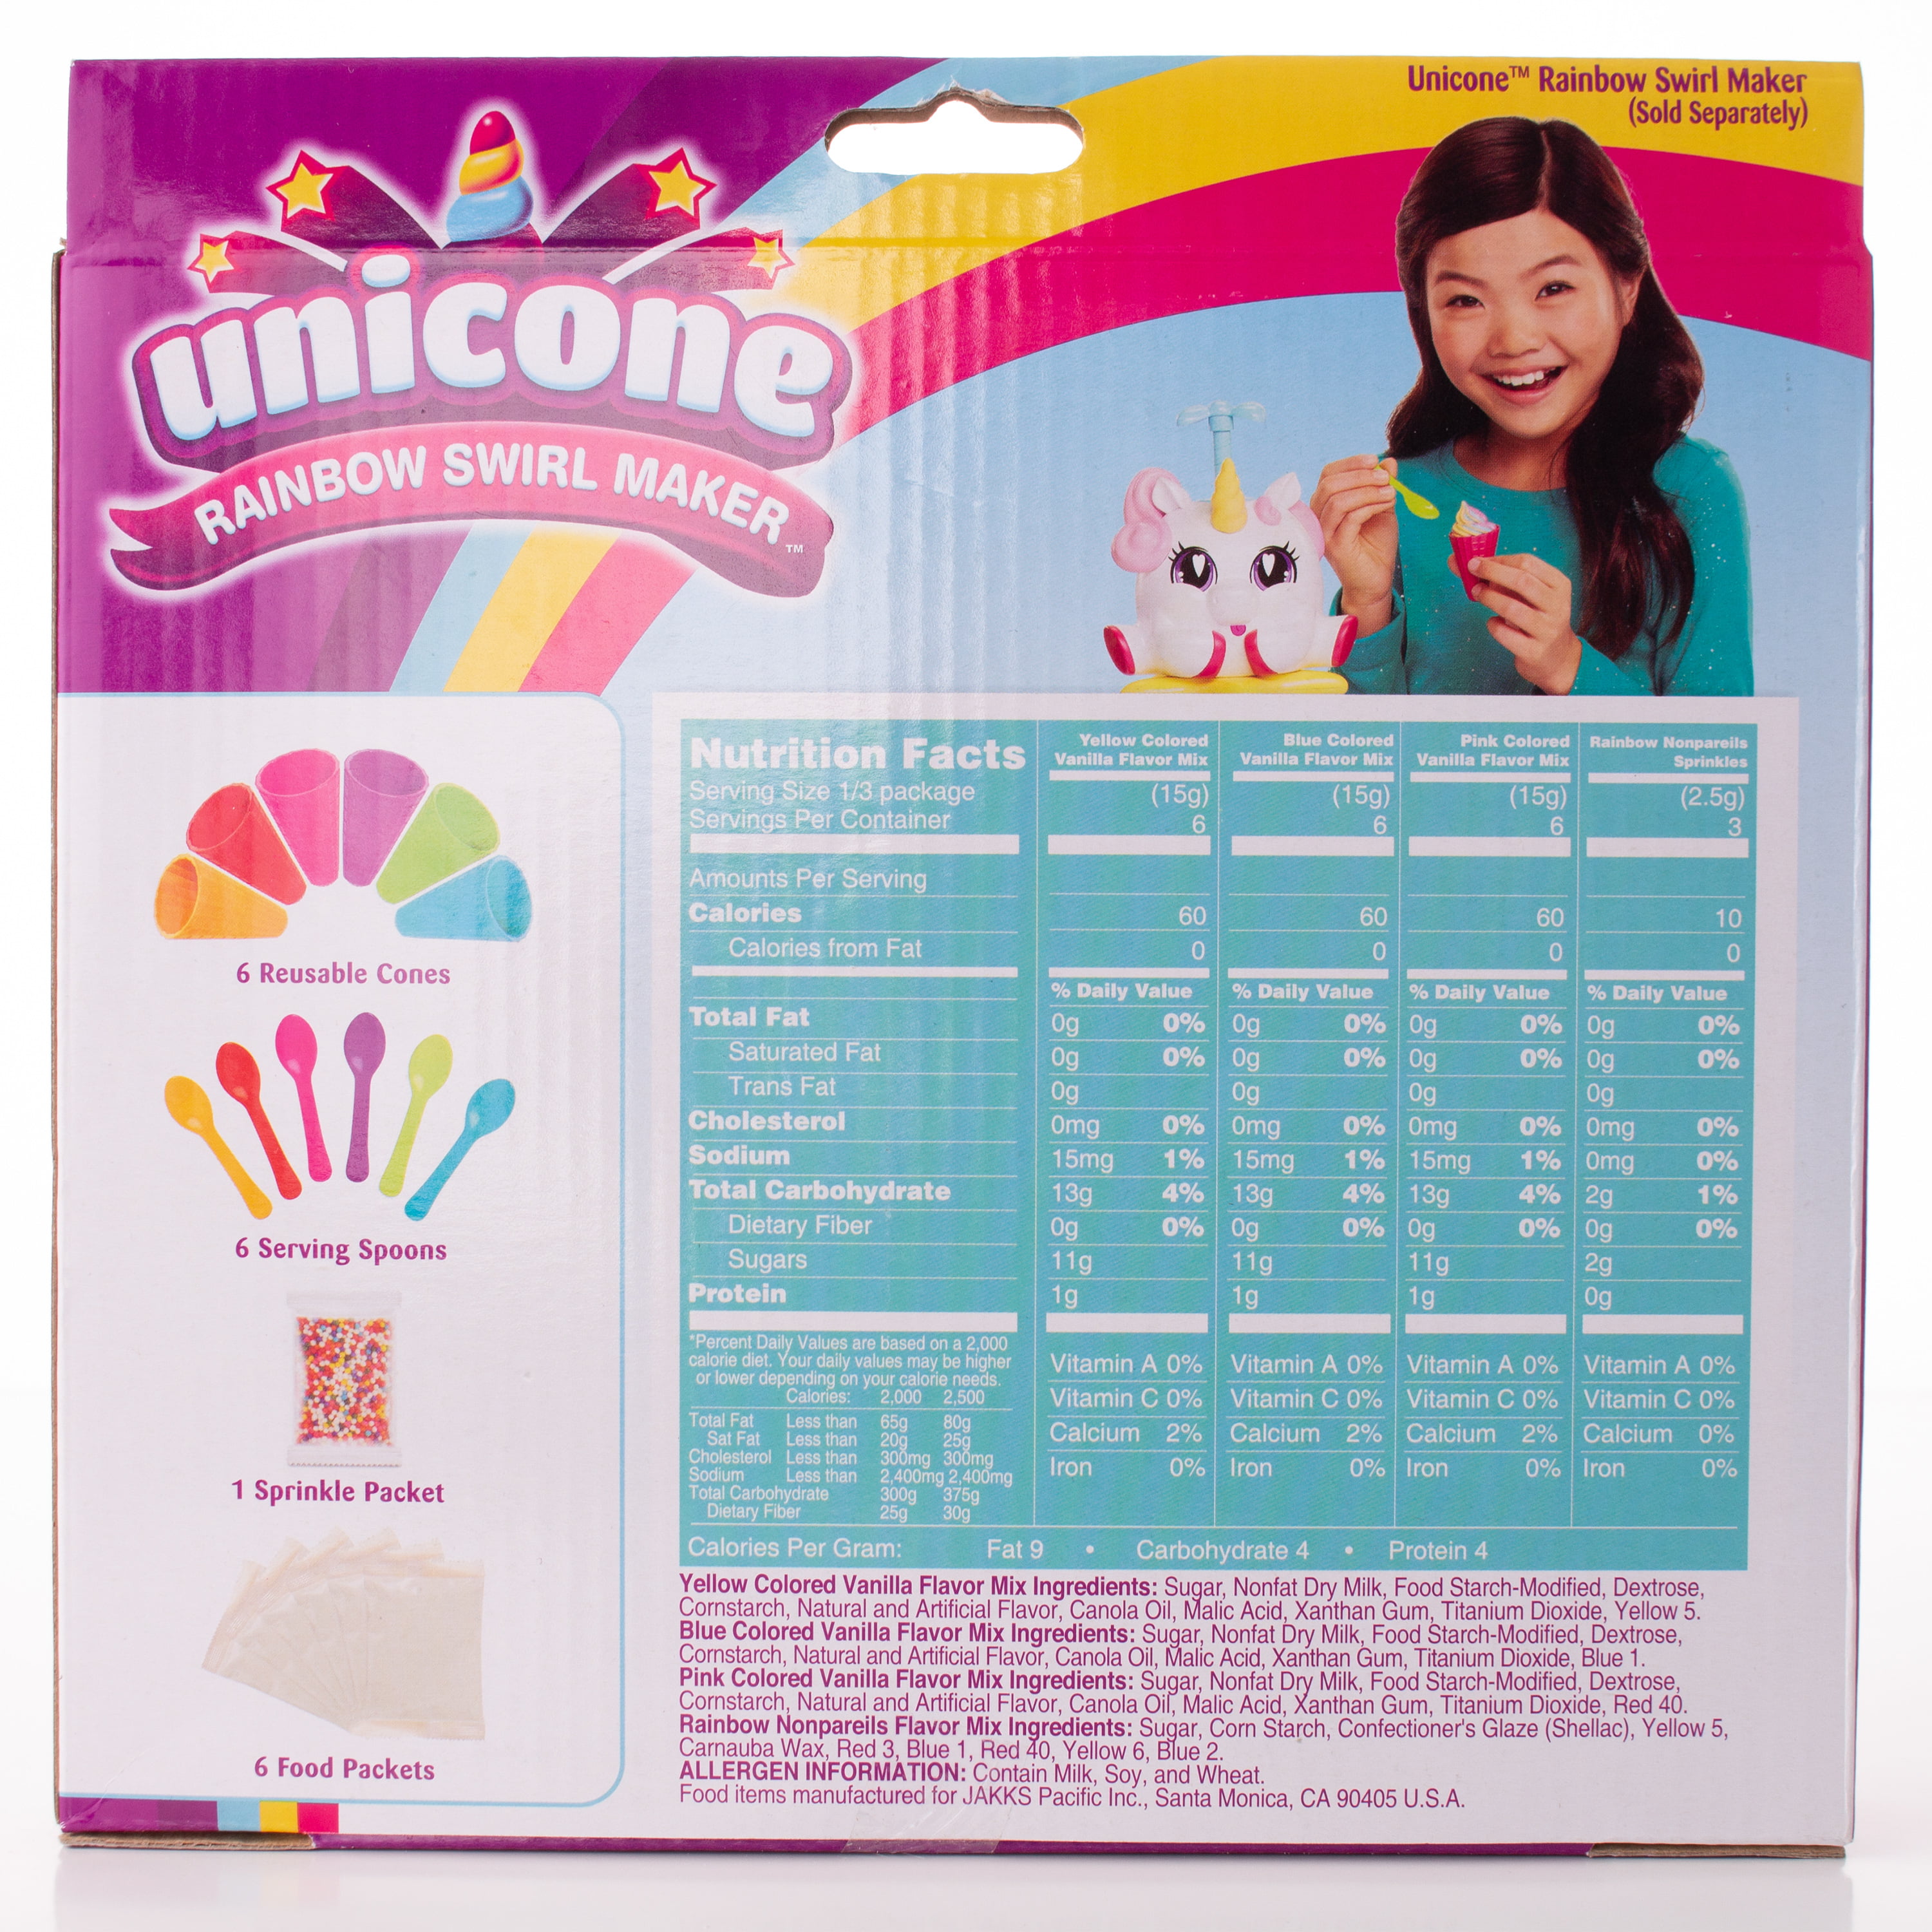 NEW Unicone Rainbow Swirl Maker makes Vanilla 18 cones refill unicorn 